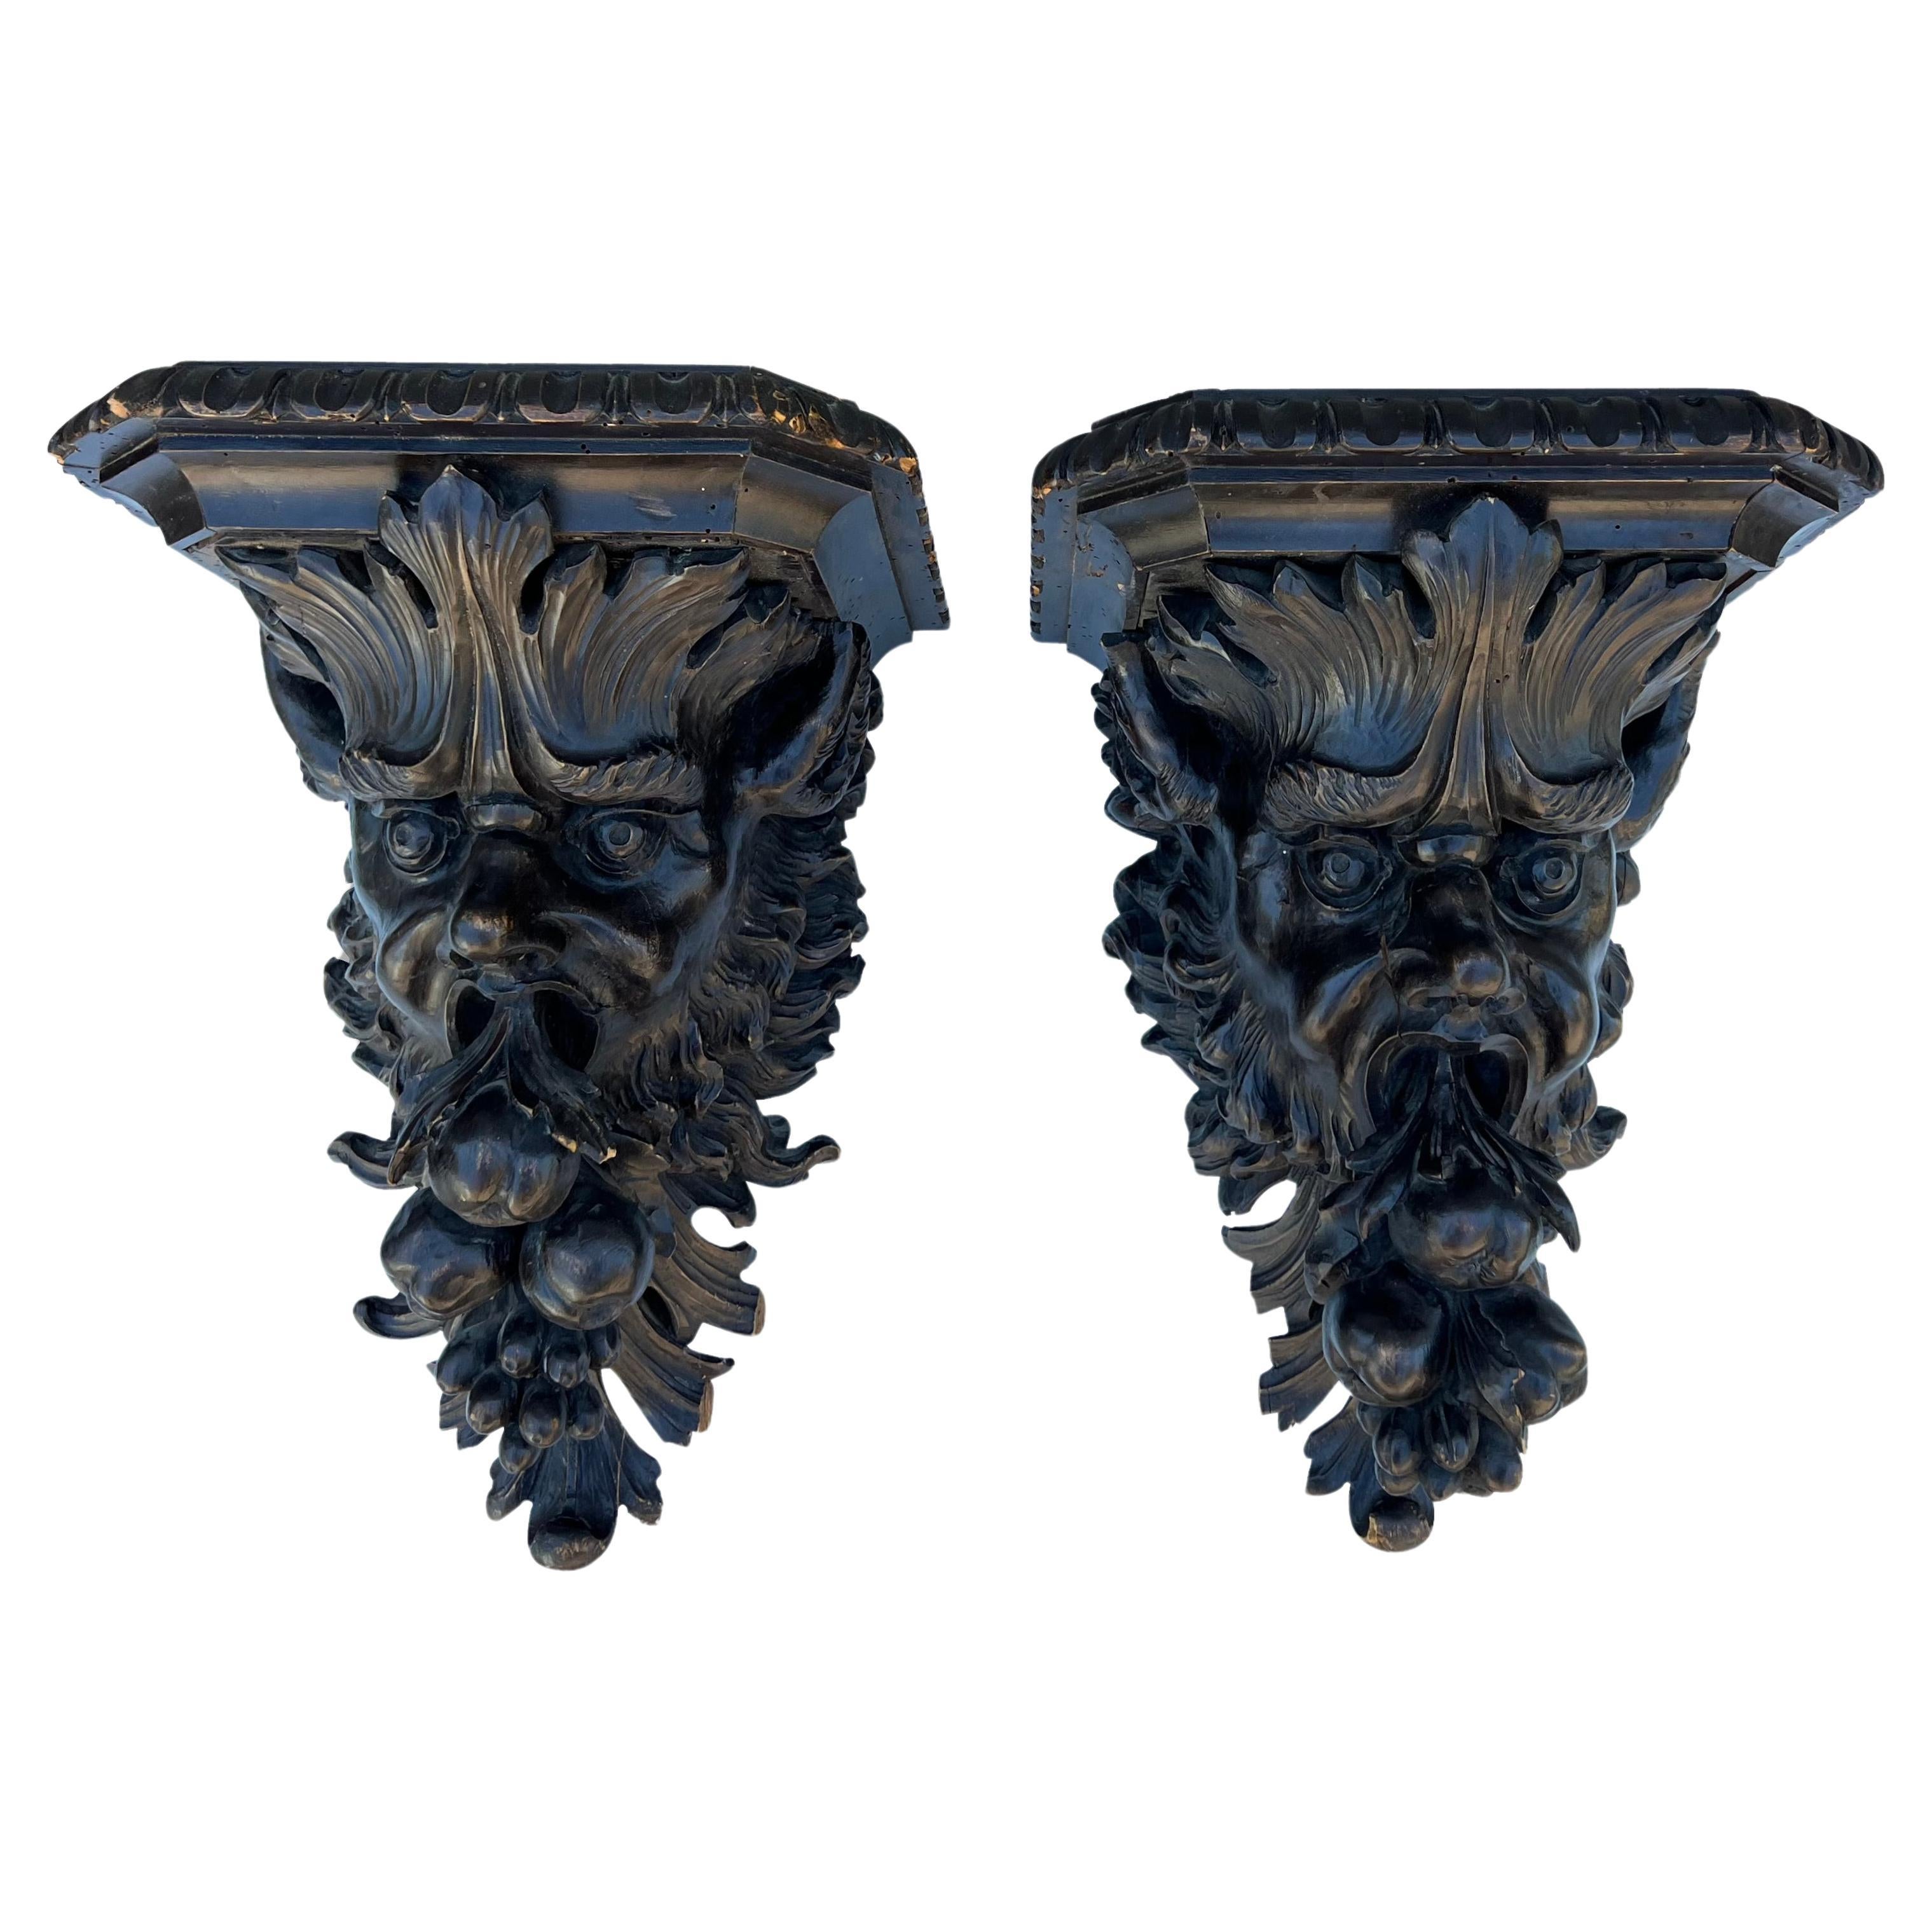 Exceptionnelle paire de supports muraux sculptés avec visages mythologiques en vente